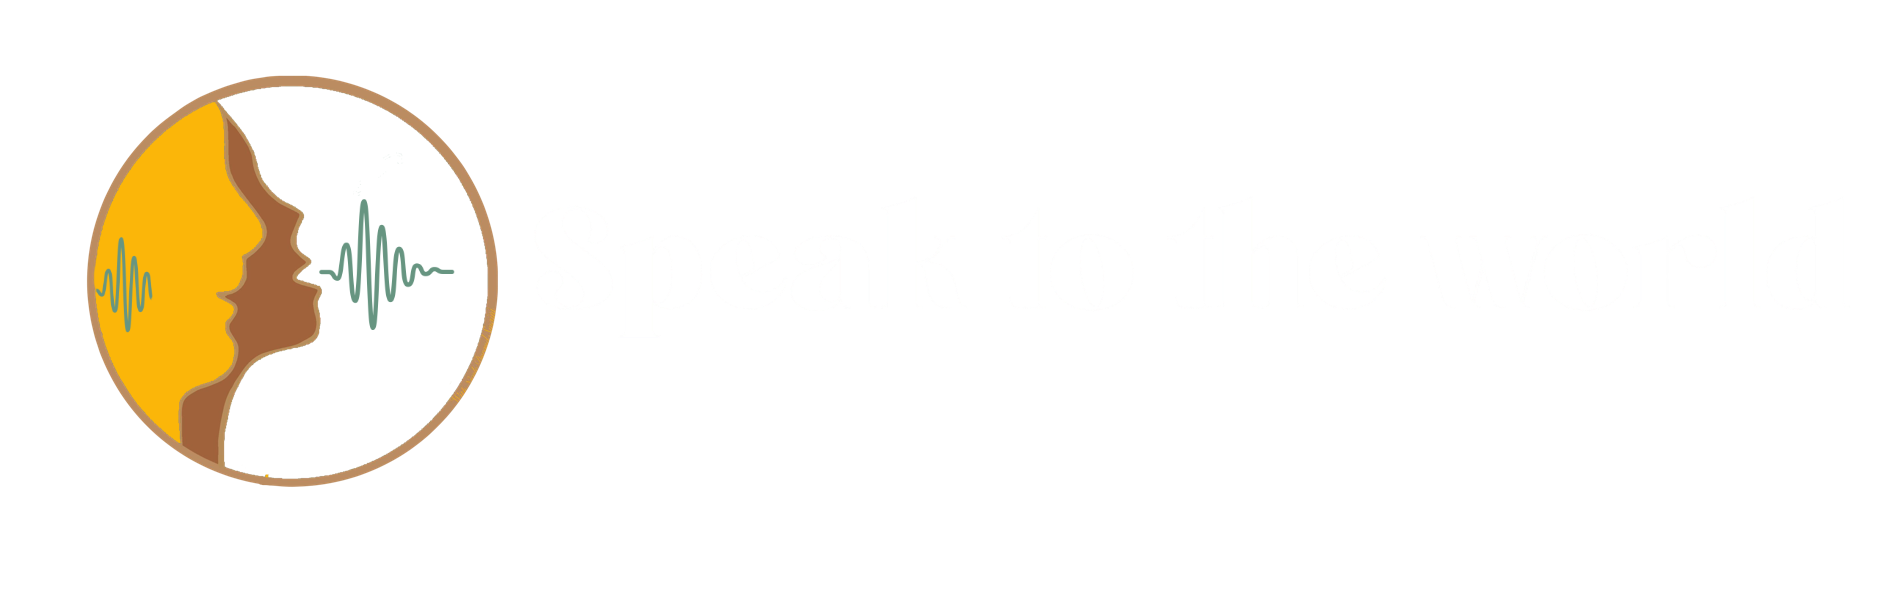 Speak to the world